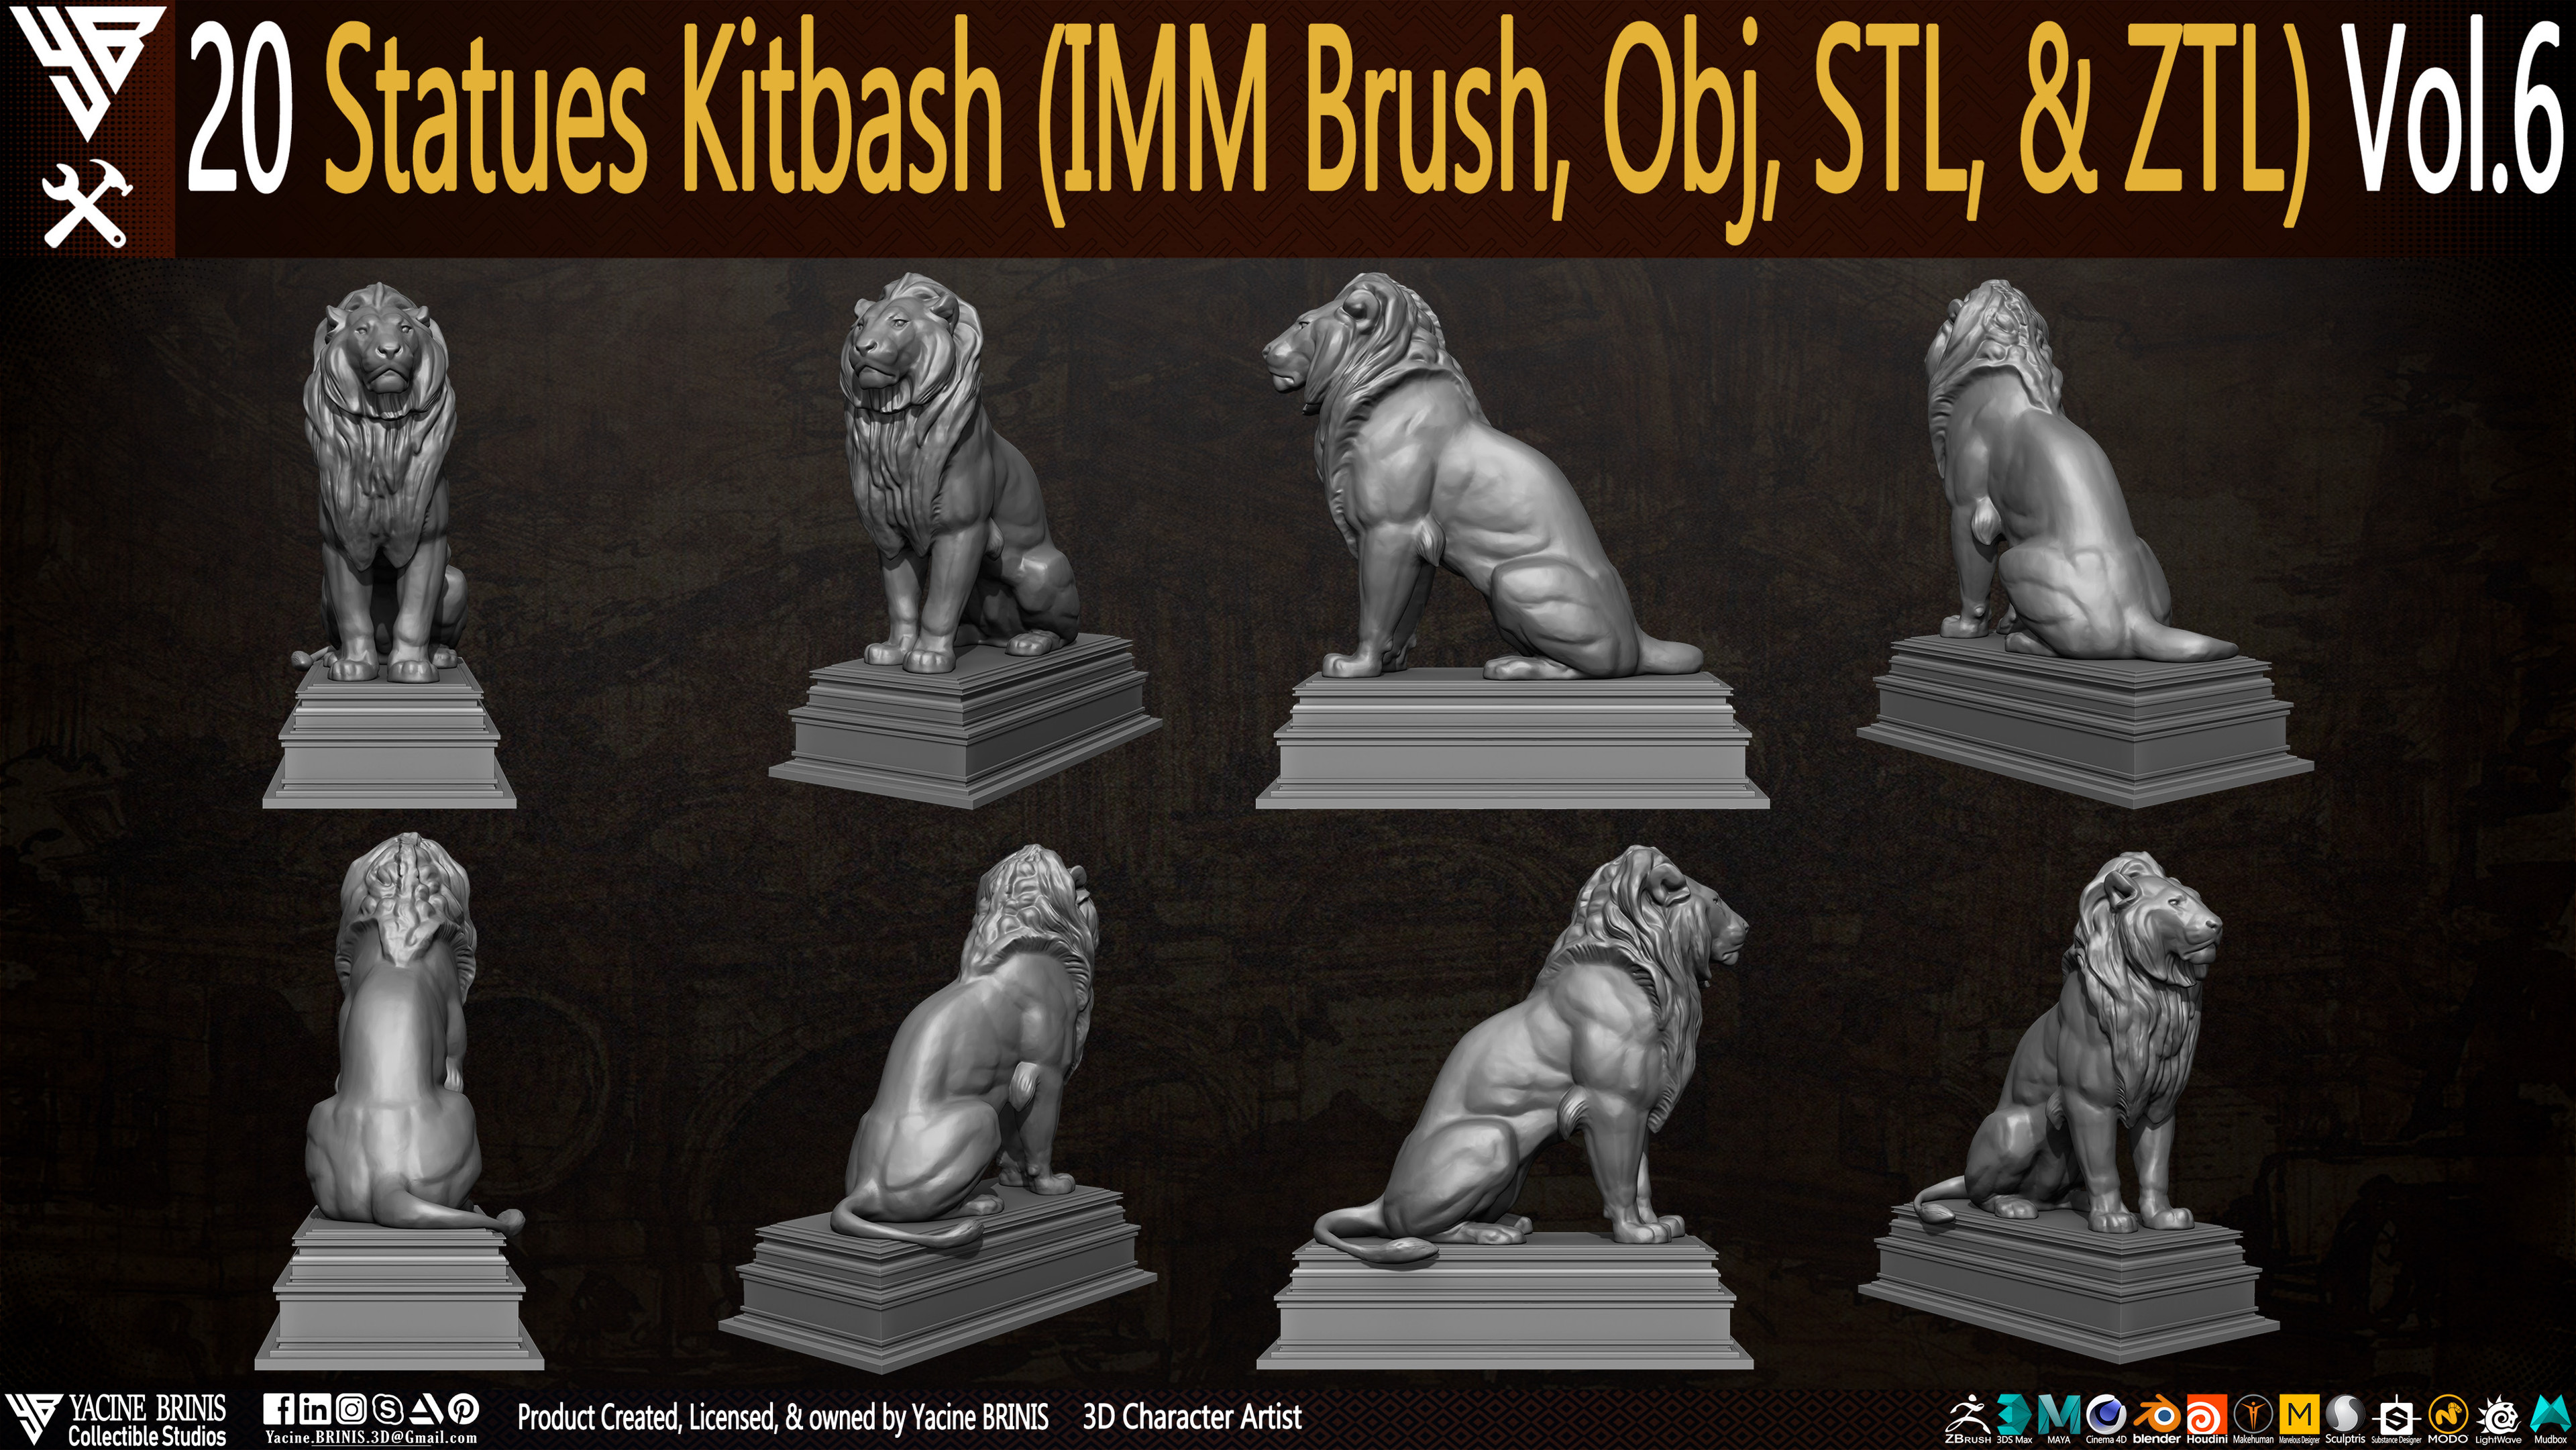 Statues Kitbash by yacine brinis Set 41